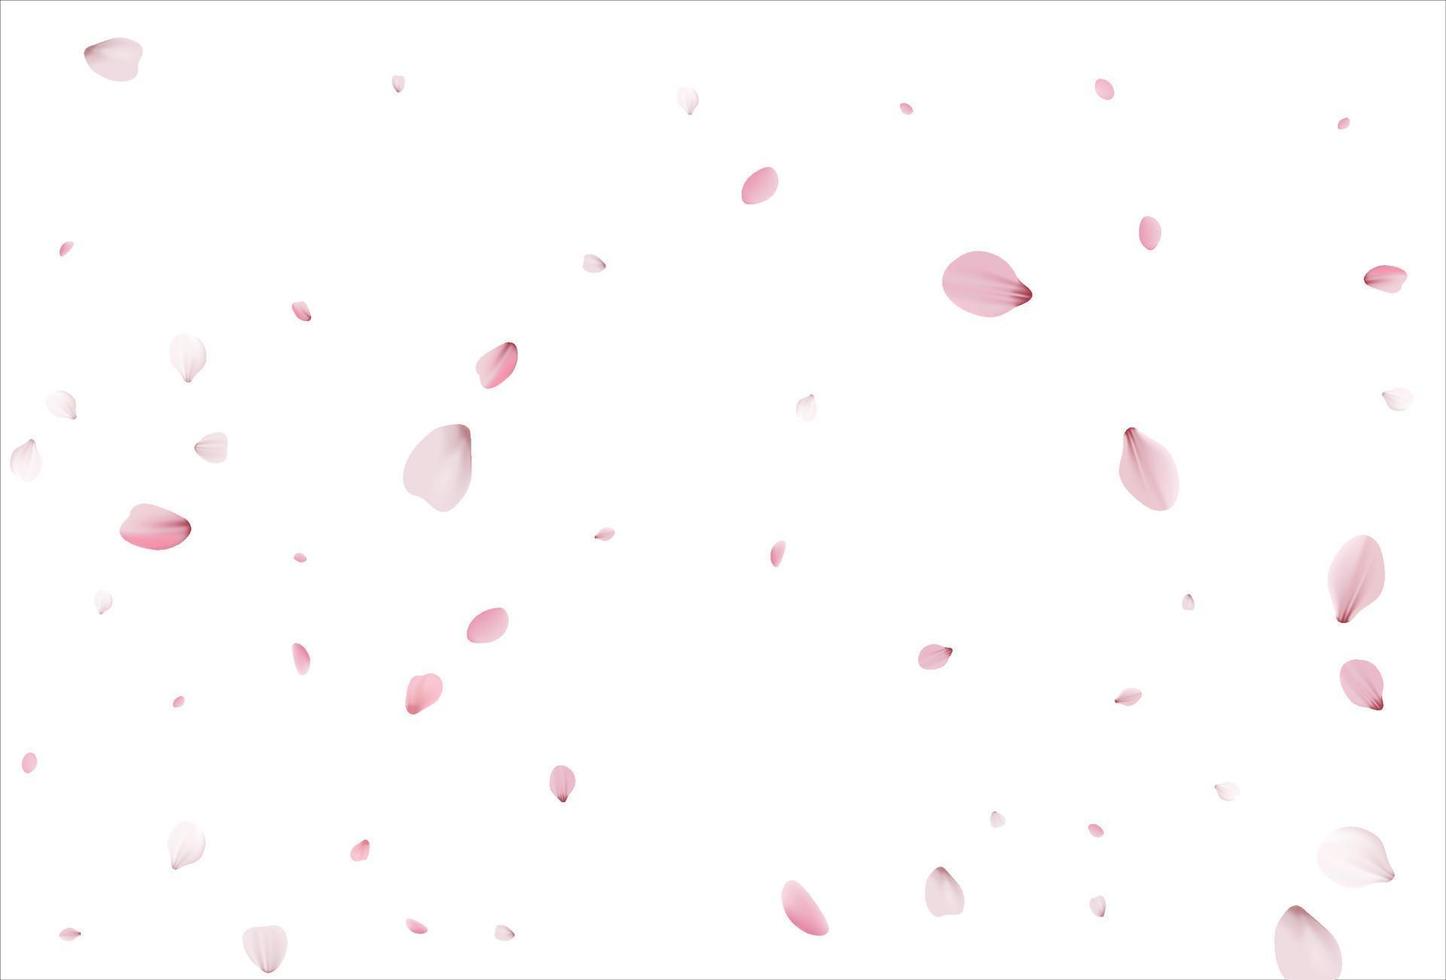 sfondo di petali di sakura. sfondo di petali di ciliegio vettore